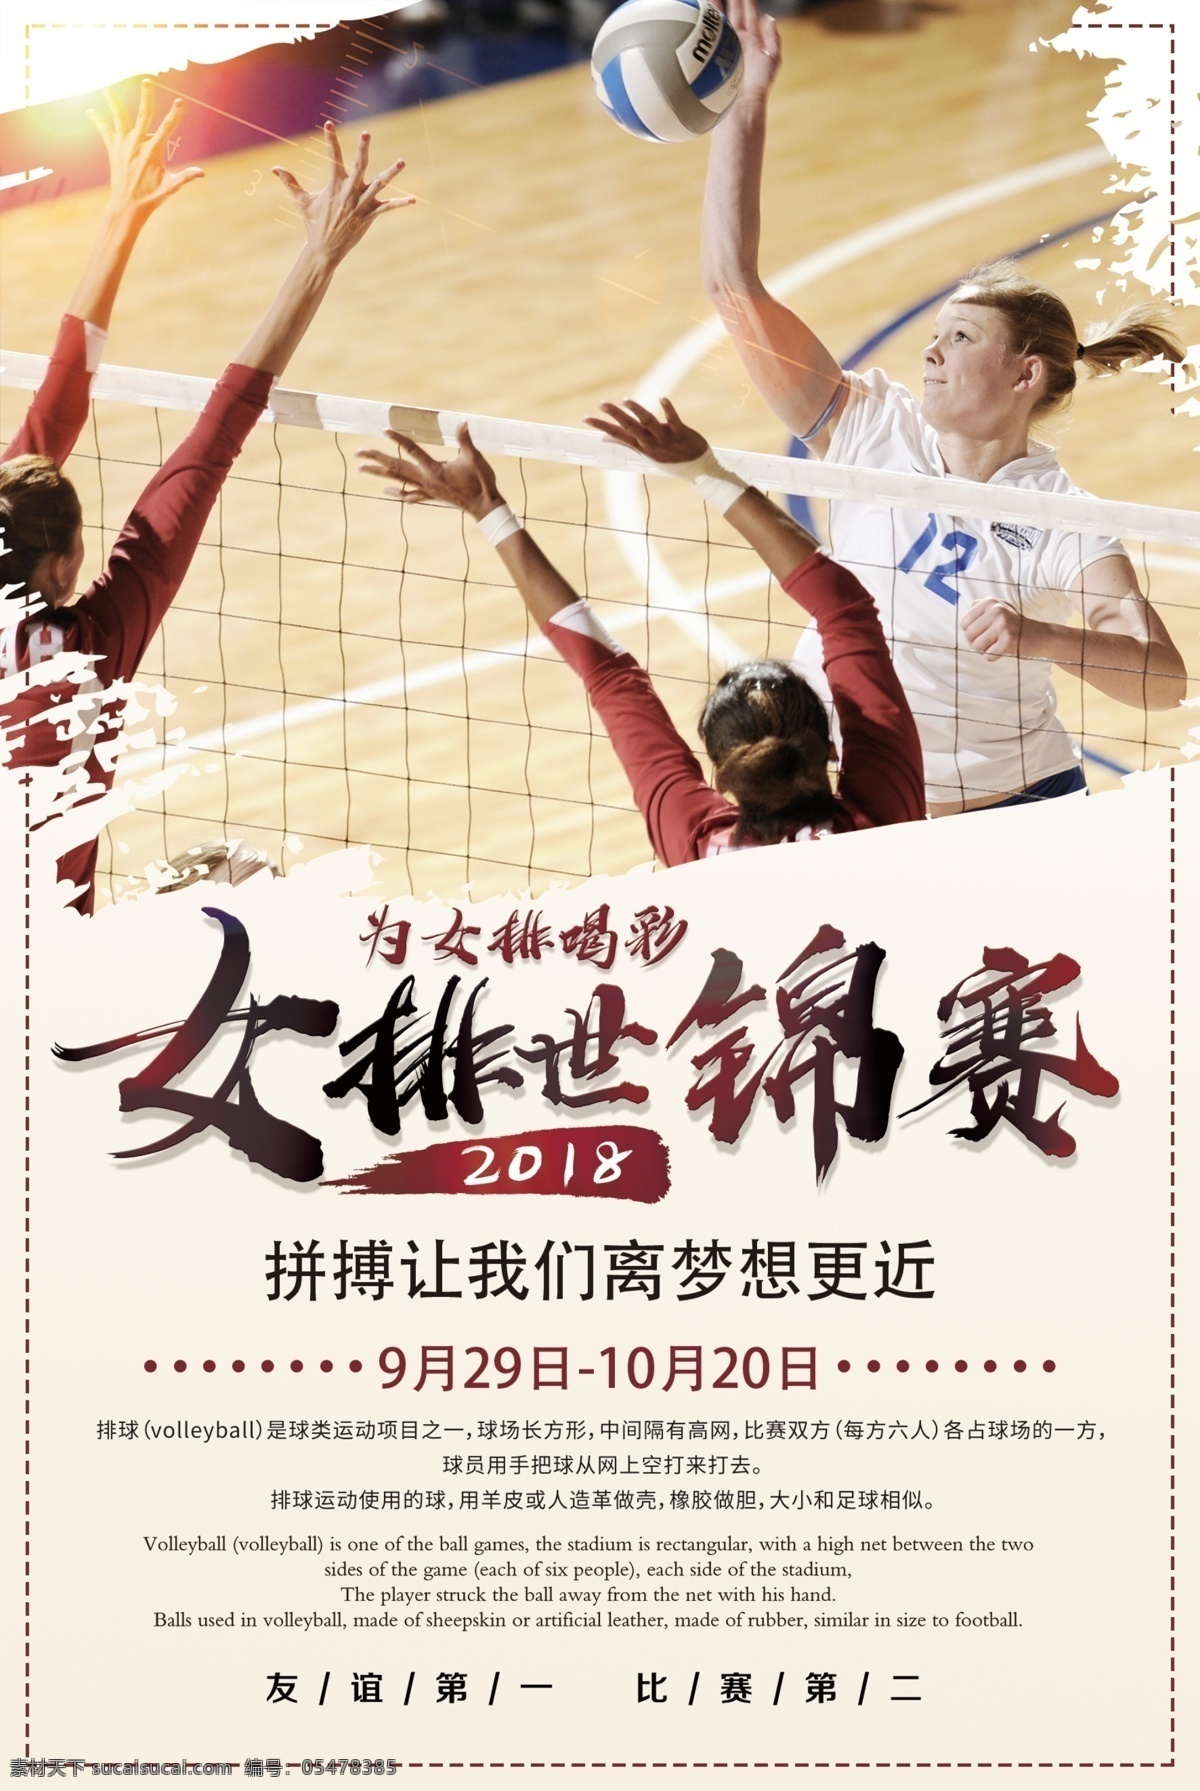 女排 世锦赛 宣传海报 体育运动 竞技比赛海报